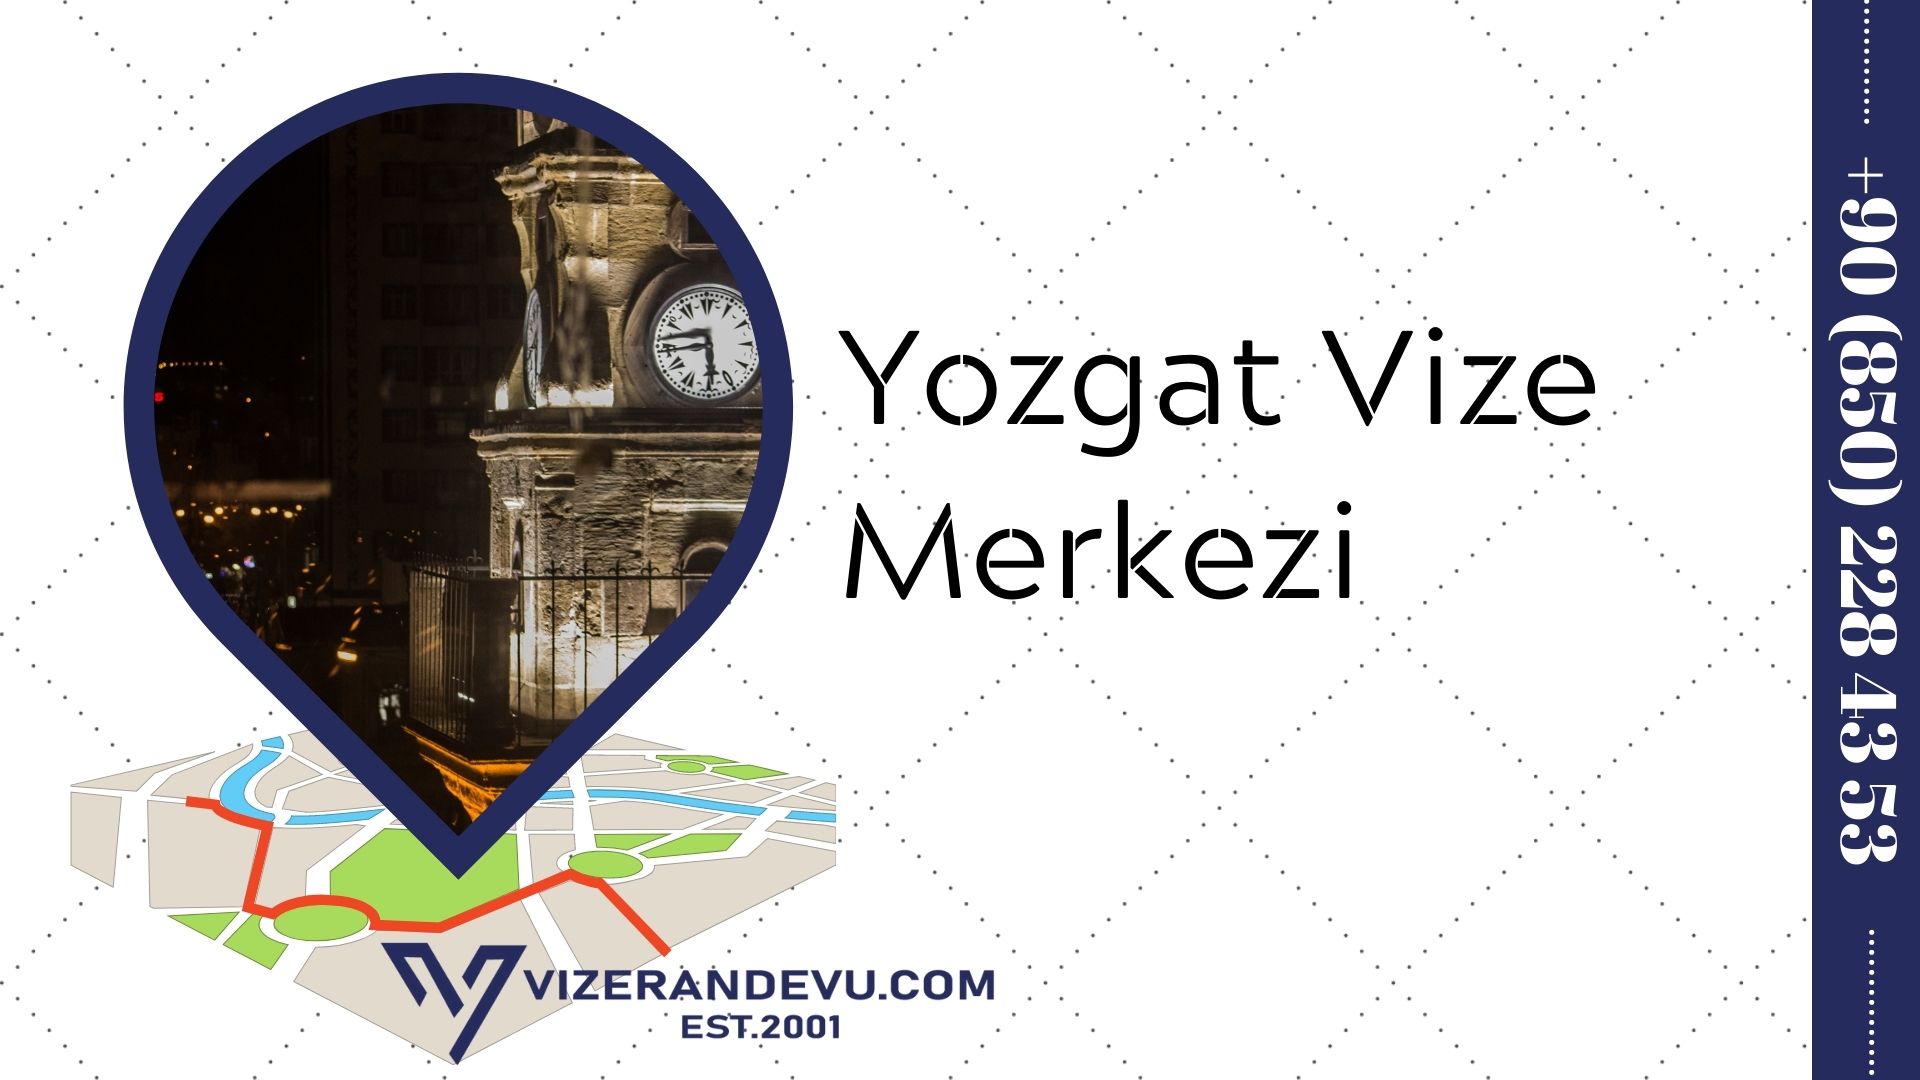 Yozgat Vize Merkezi